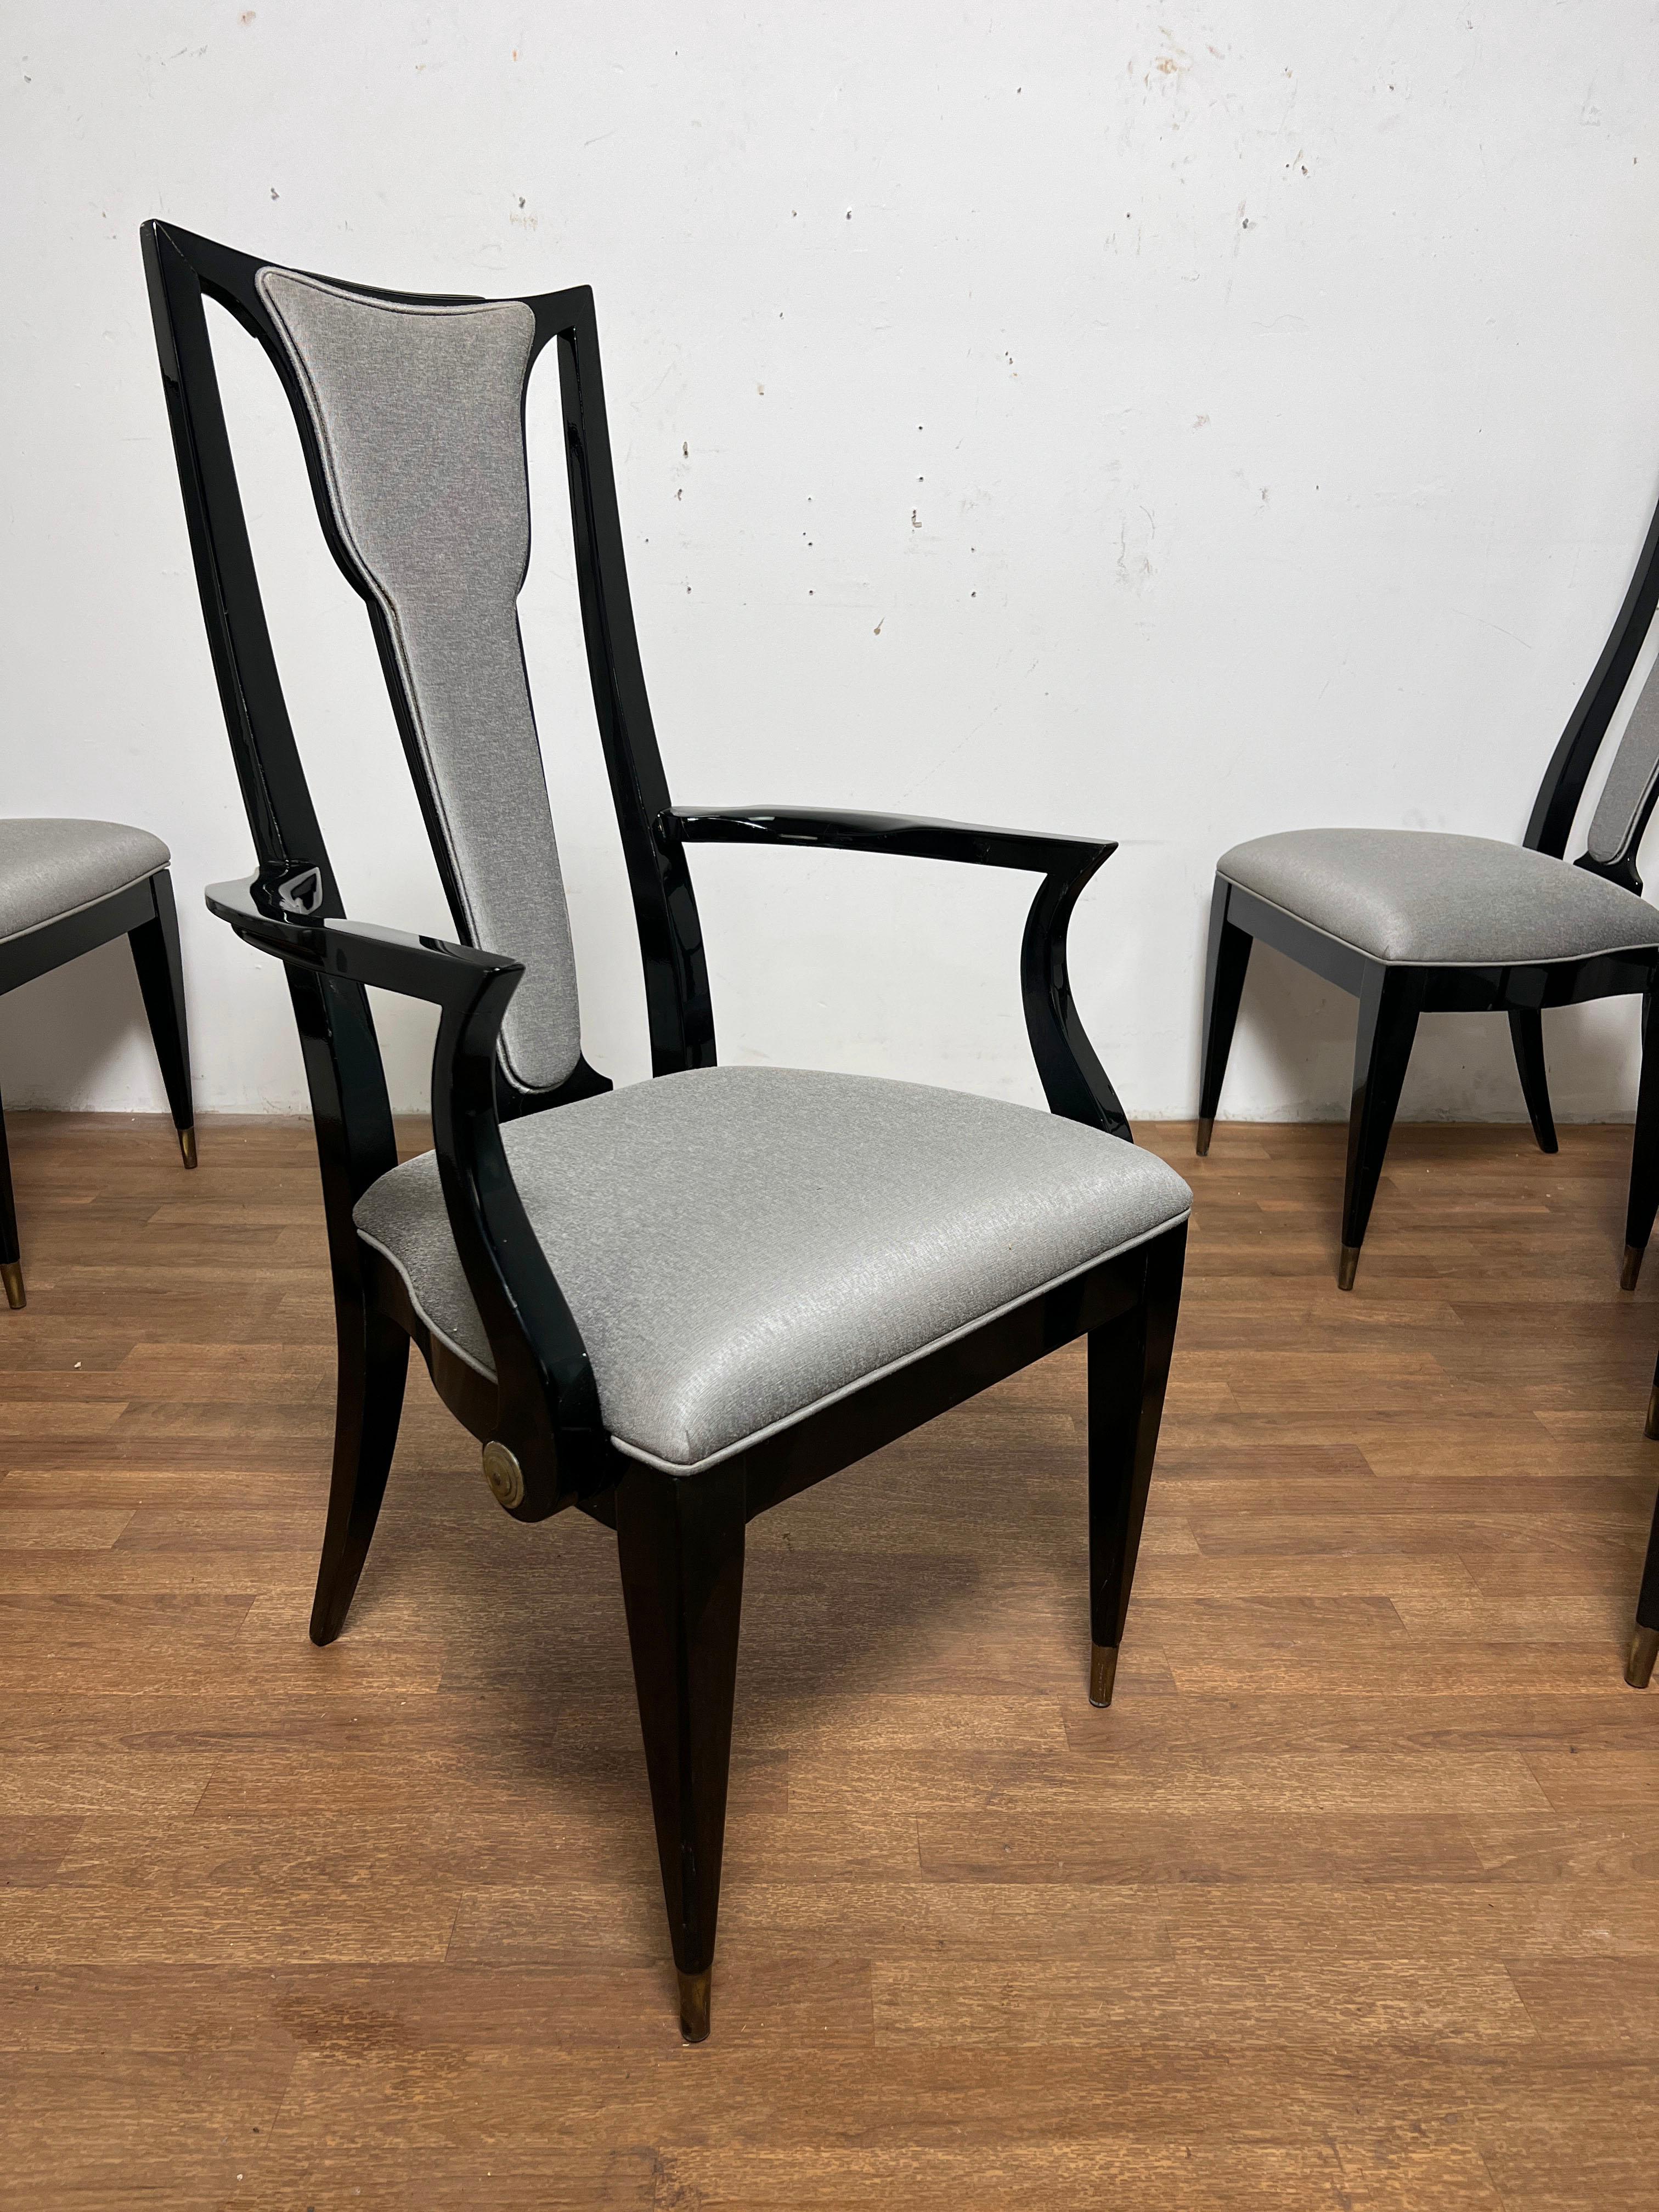 Ein Satz von sechs eleganten Esszimmerstühlen mit hoher Rückenlehne, die früher in einer von Ryan Korban in den frühen 2000er Jahren entworfenen Einrichtung standen.  Diese stilvollen Stühle aus der Mitte des 21. Jahrhunderts haben einen